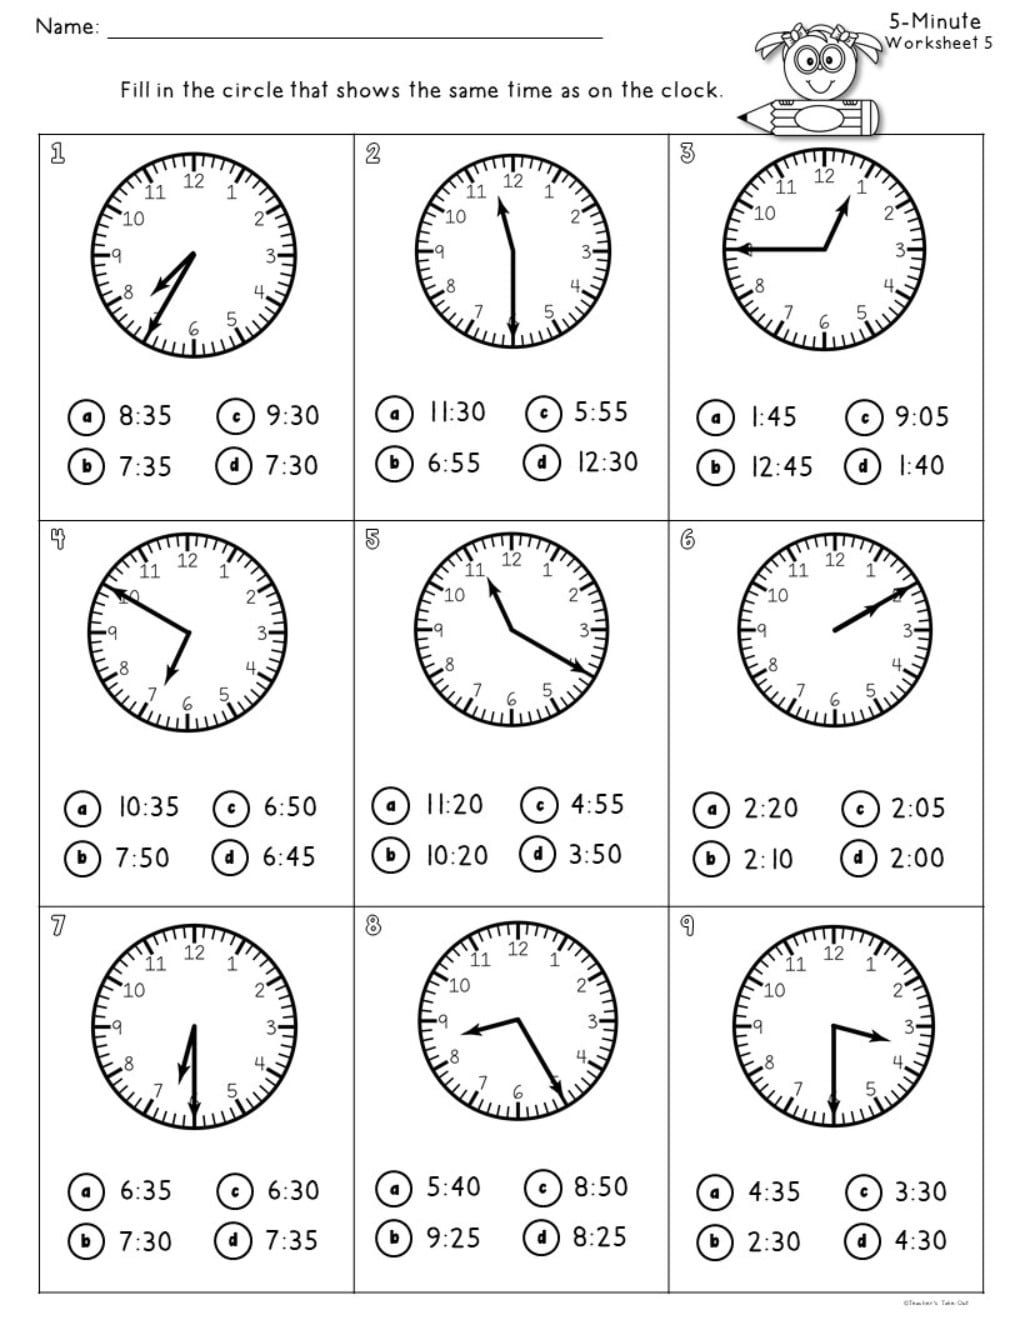 multiplication-worksheets-wheels-for-k-ds-6-funnycrafts